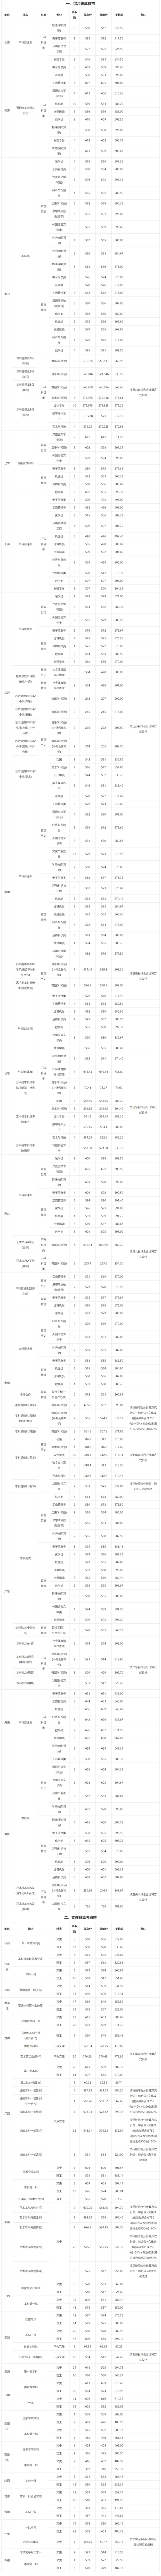 浙江师范大学2021年省外录取情况一览表